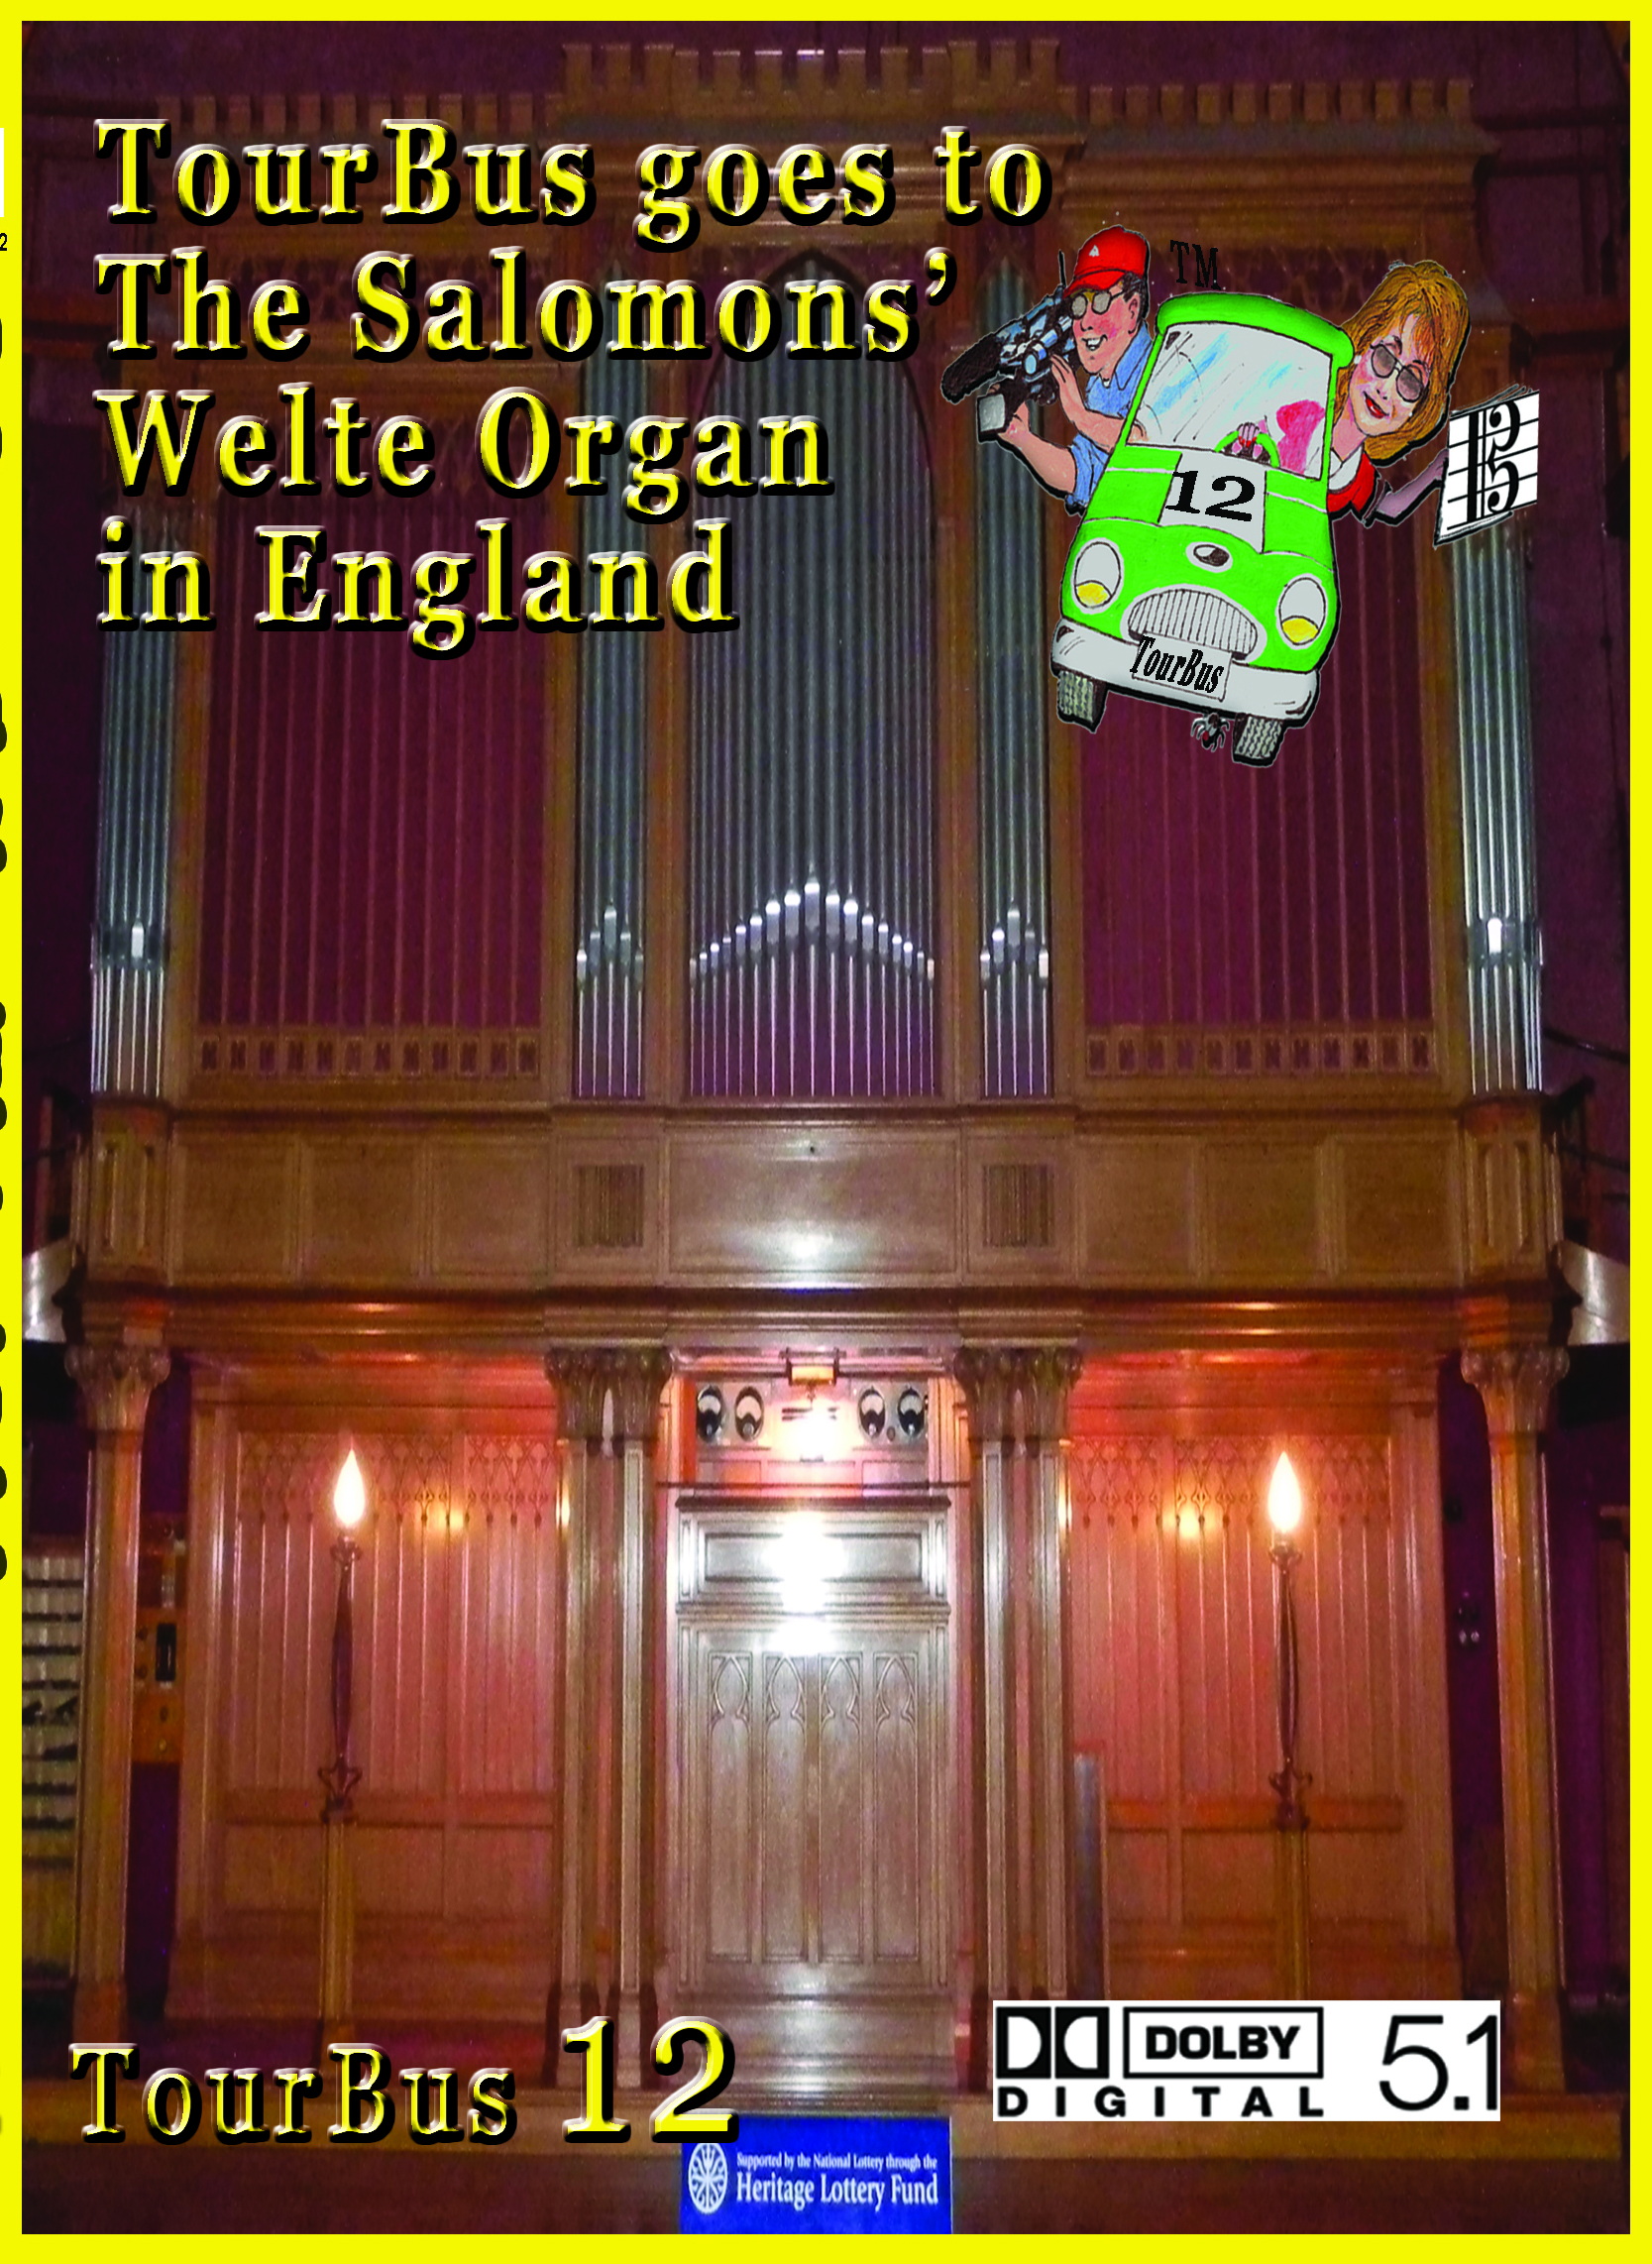 Welte Organ